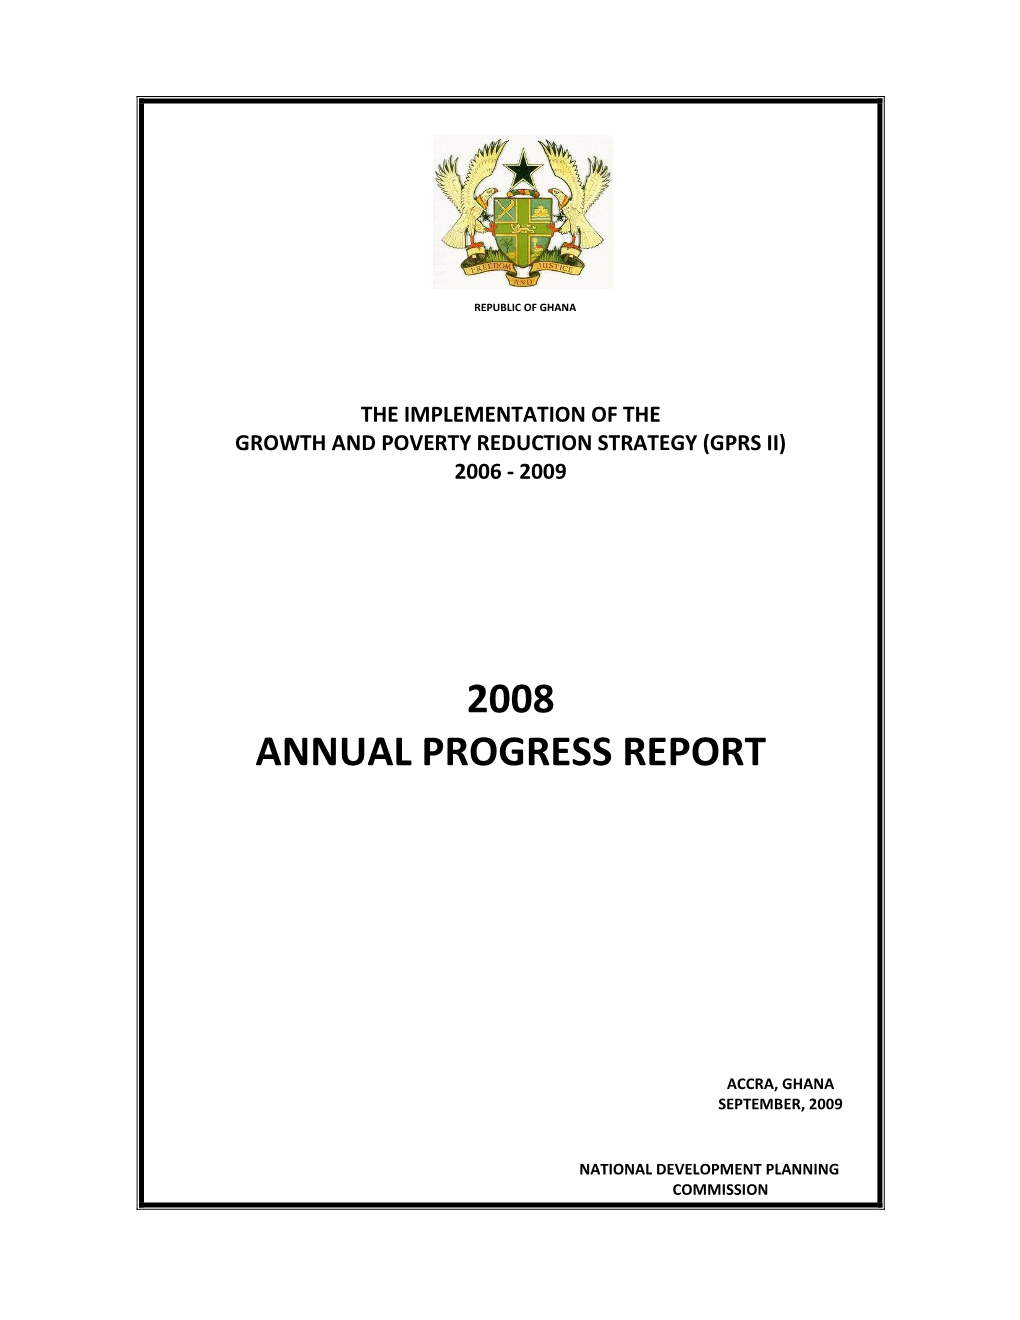 2008 Annual Progress Report